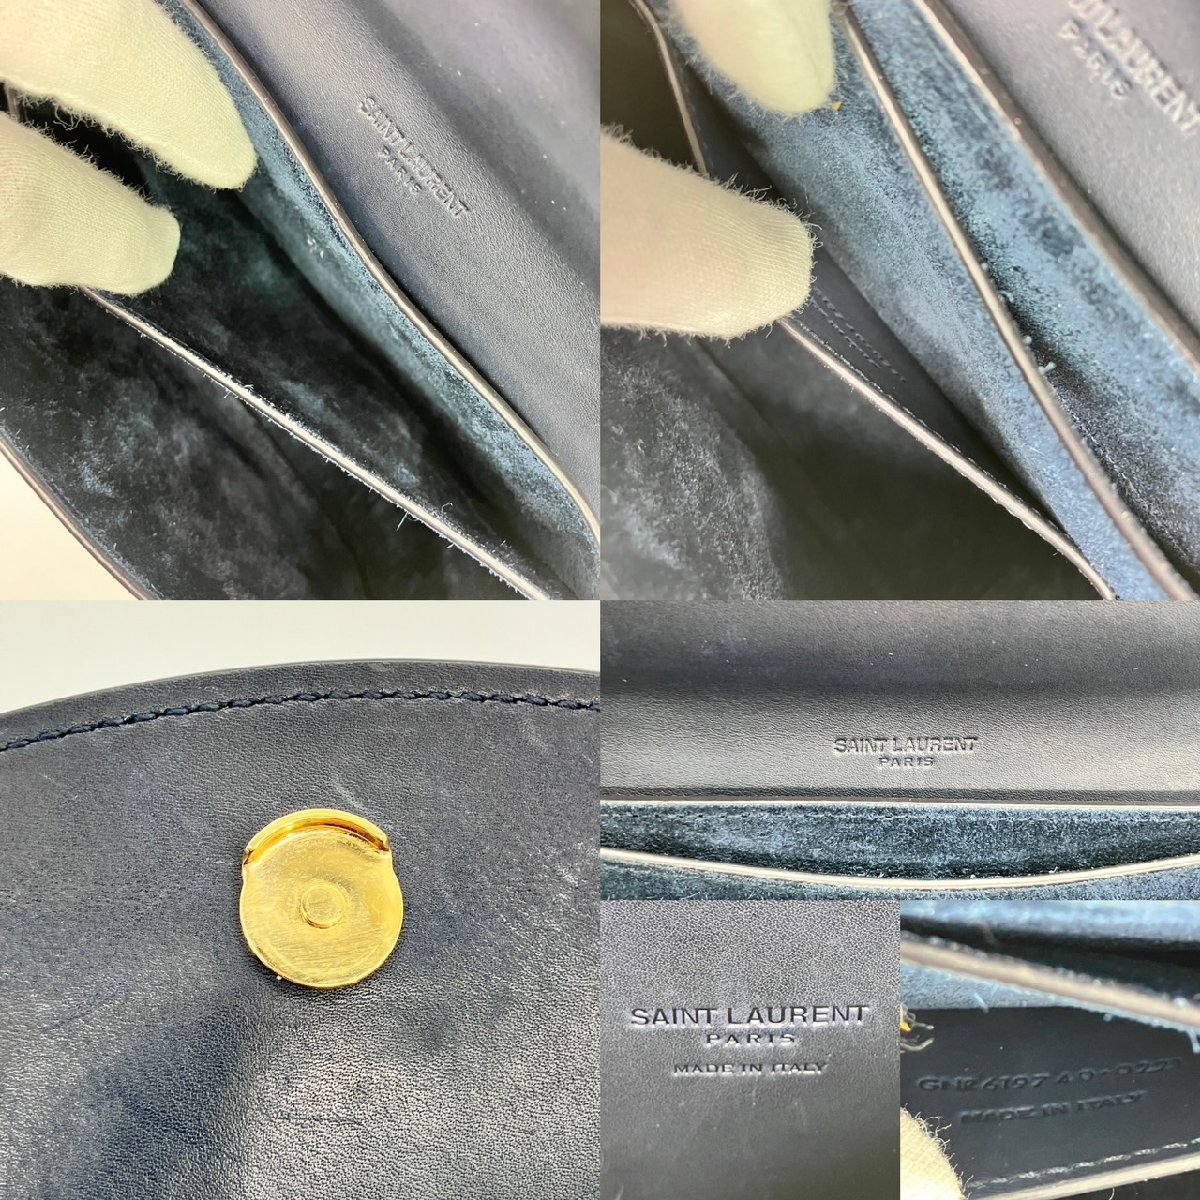  Yves Saint-Laurent YVES SAINT LAURENT сумка на плечо YSL Logo темно-синий Gold металлические принадлежности наклонный .. сумка портфель женский сумка 6-3-898